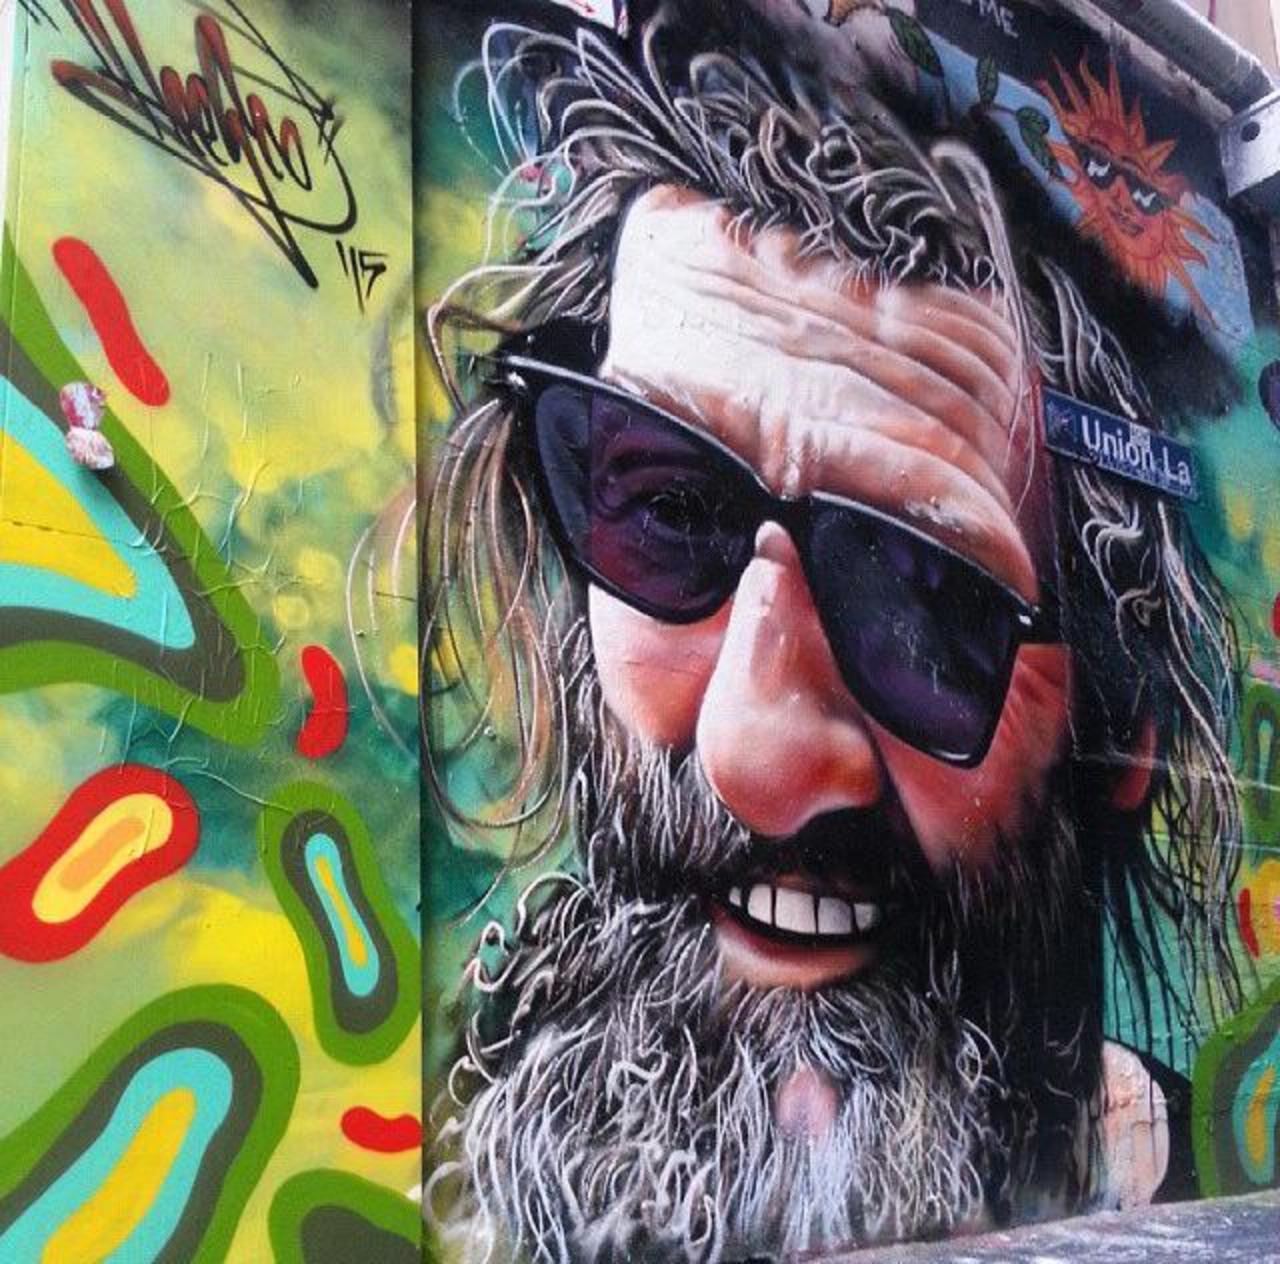 Street Art by Heesco in Melbourne 

#art #arte #graffiti #streetart http://t.co/k2mDKOlUzn